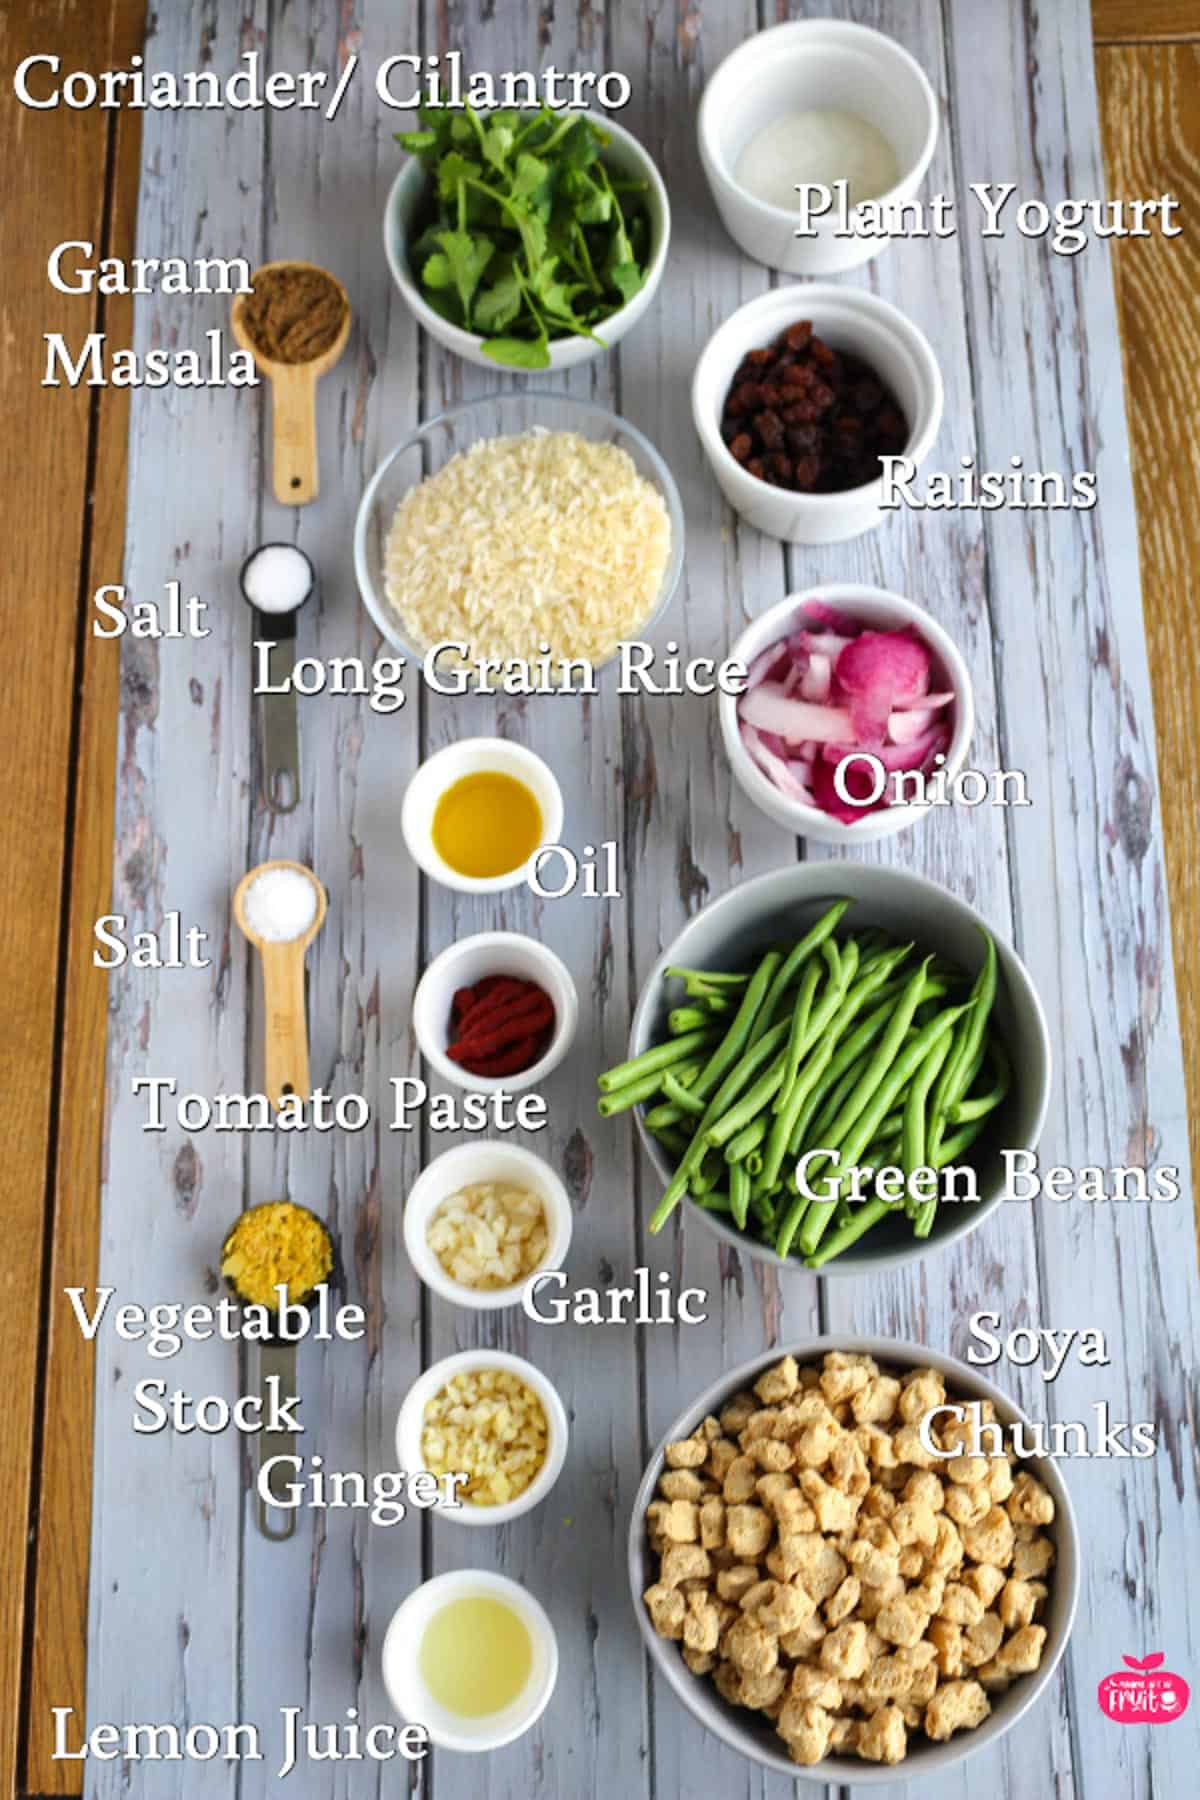 Ingredients for Speedy Soya Chunks Biryani, Coriander, plant yogurt, raisins, onion, green beans, soya chunks, lemon juice, ginger, vegetable stock, garlic, tomato paste, salt, oil, long grain rice, garam masala.